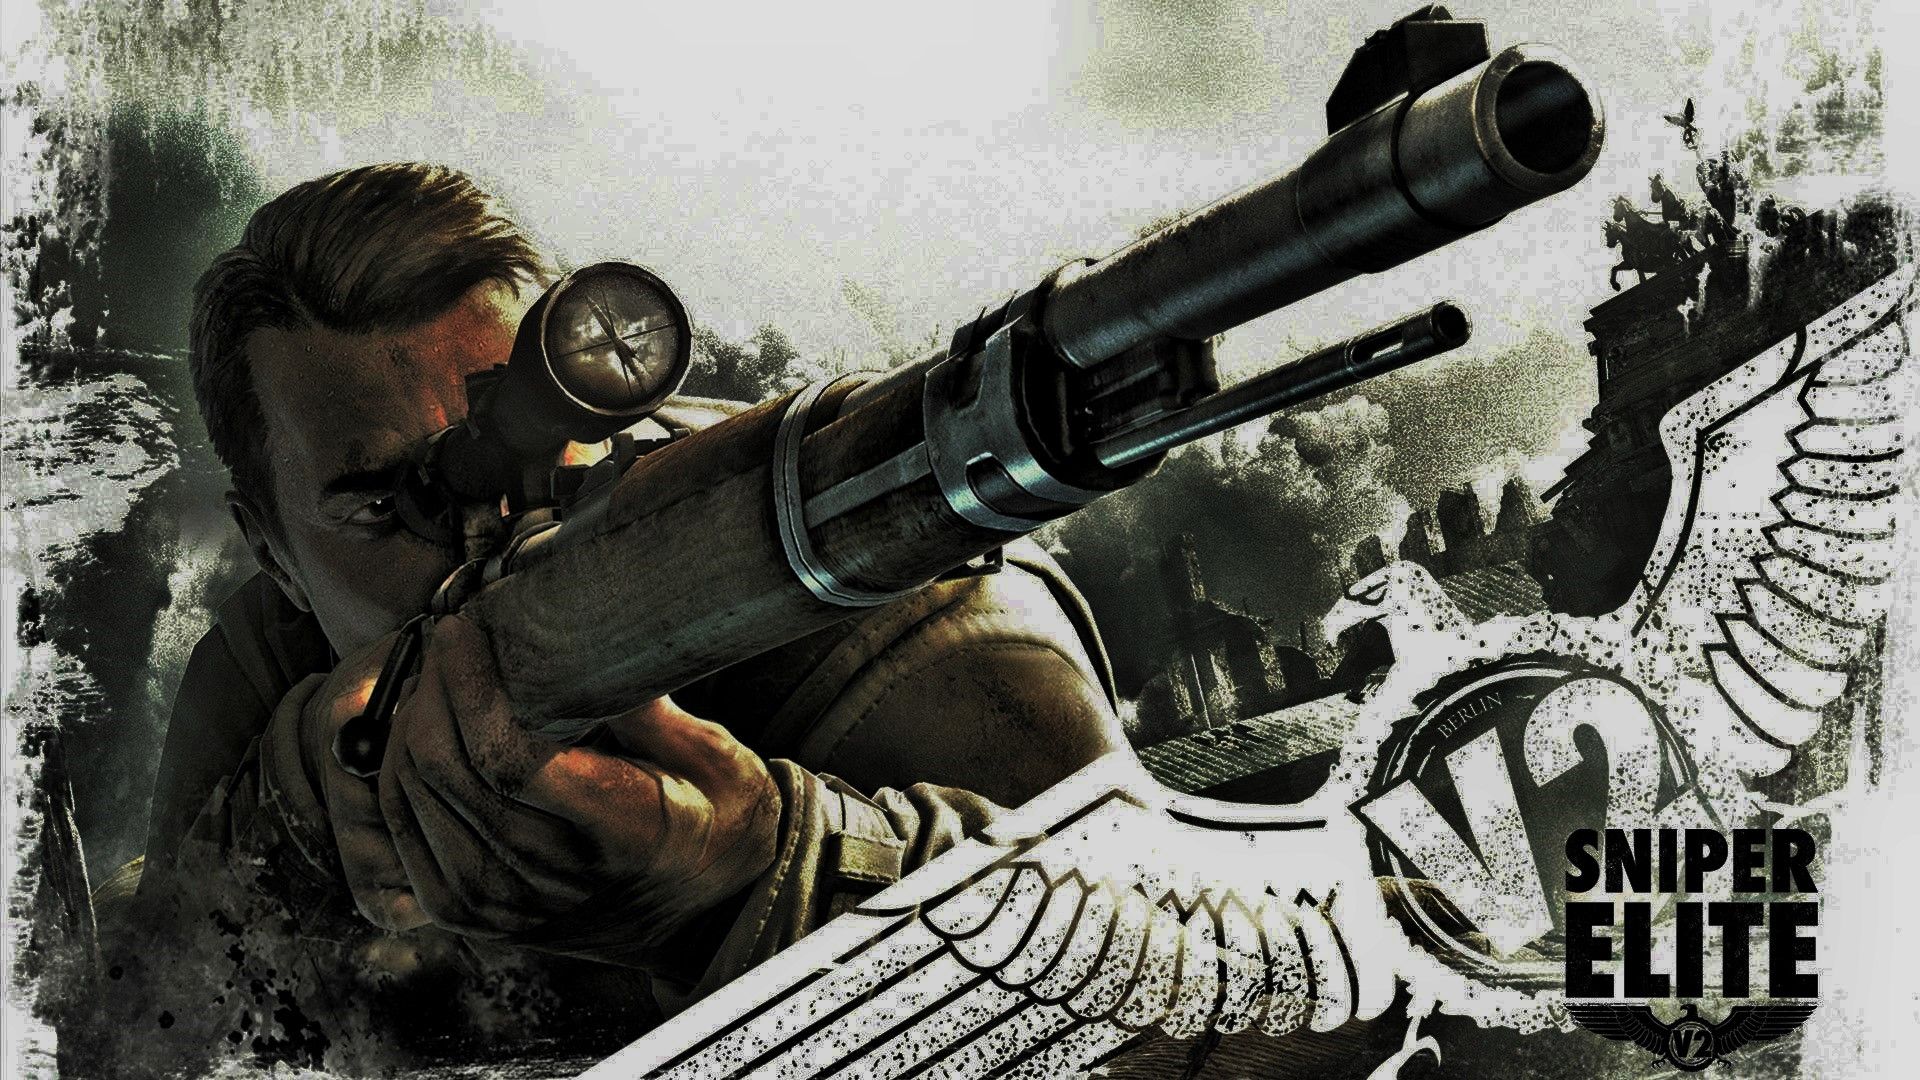 Sniper Elite Wallpaper. Elite Dangerous Wallpaper, Halo Elite Wallpaper and Xbox One Elite Wallpaper